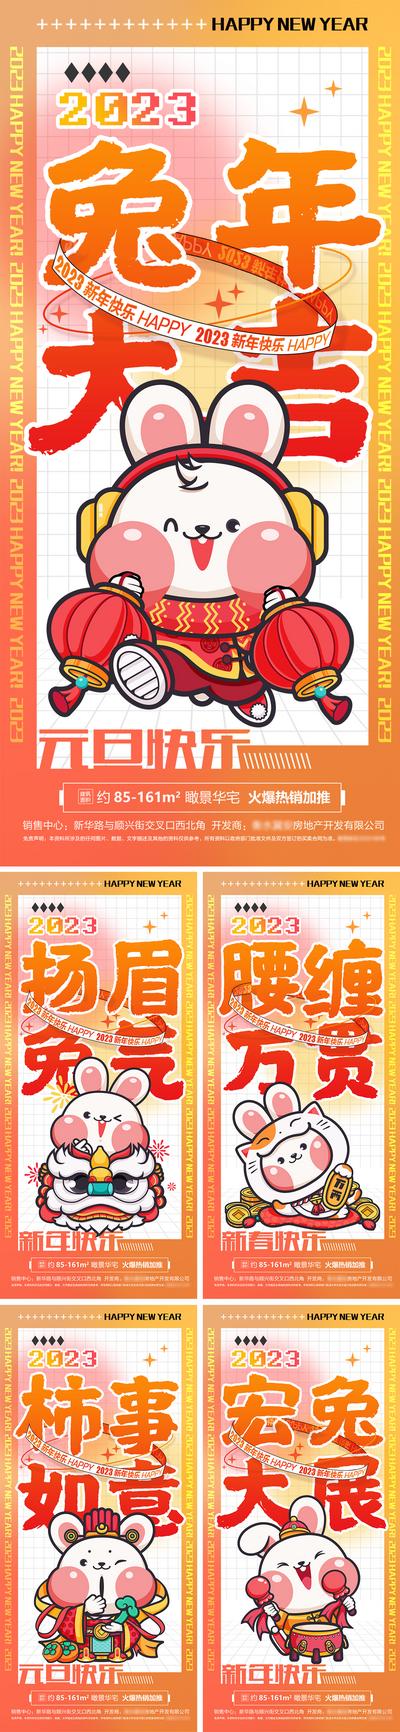 南门网 海报 房地产 公历节日 元旦 新年 兔年 卡通 插画 酸性 系列